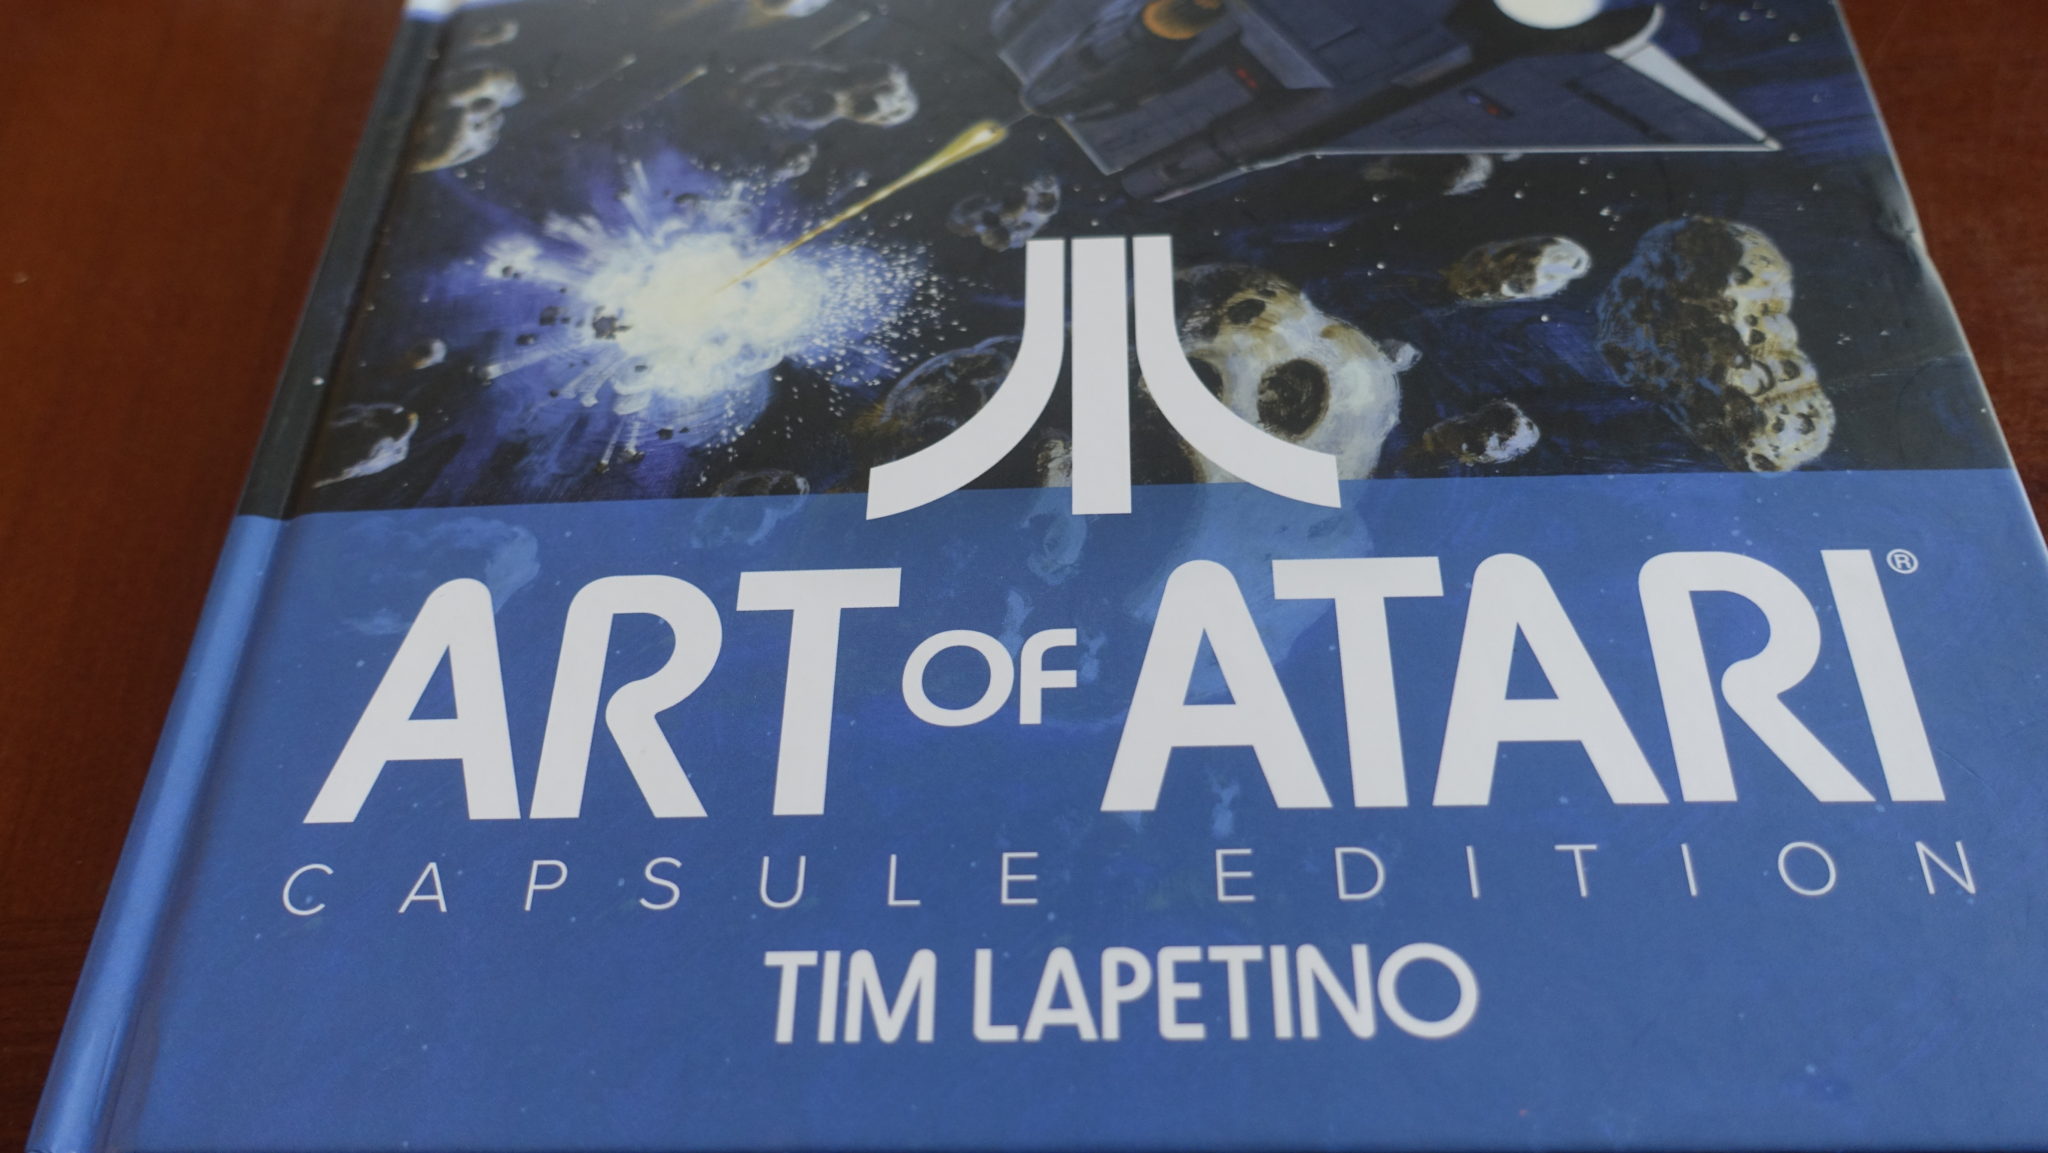 Art of Atari Capsule Edition Review